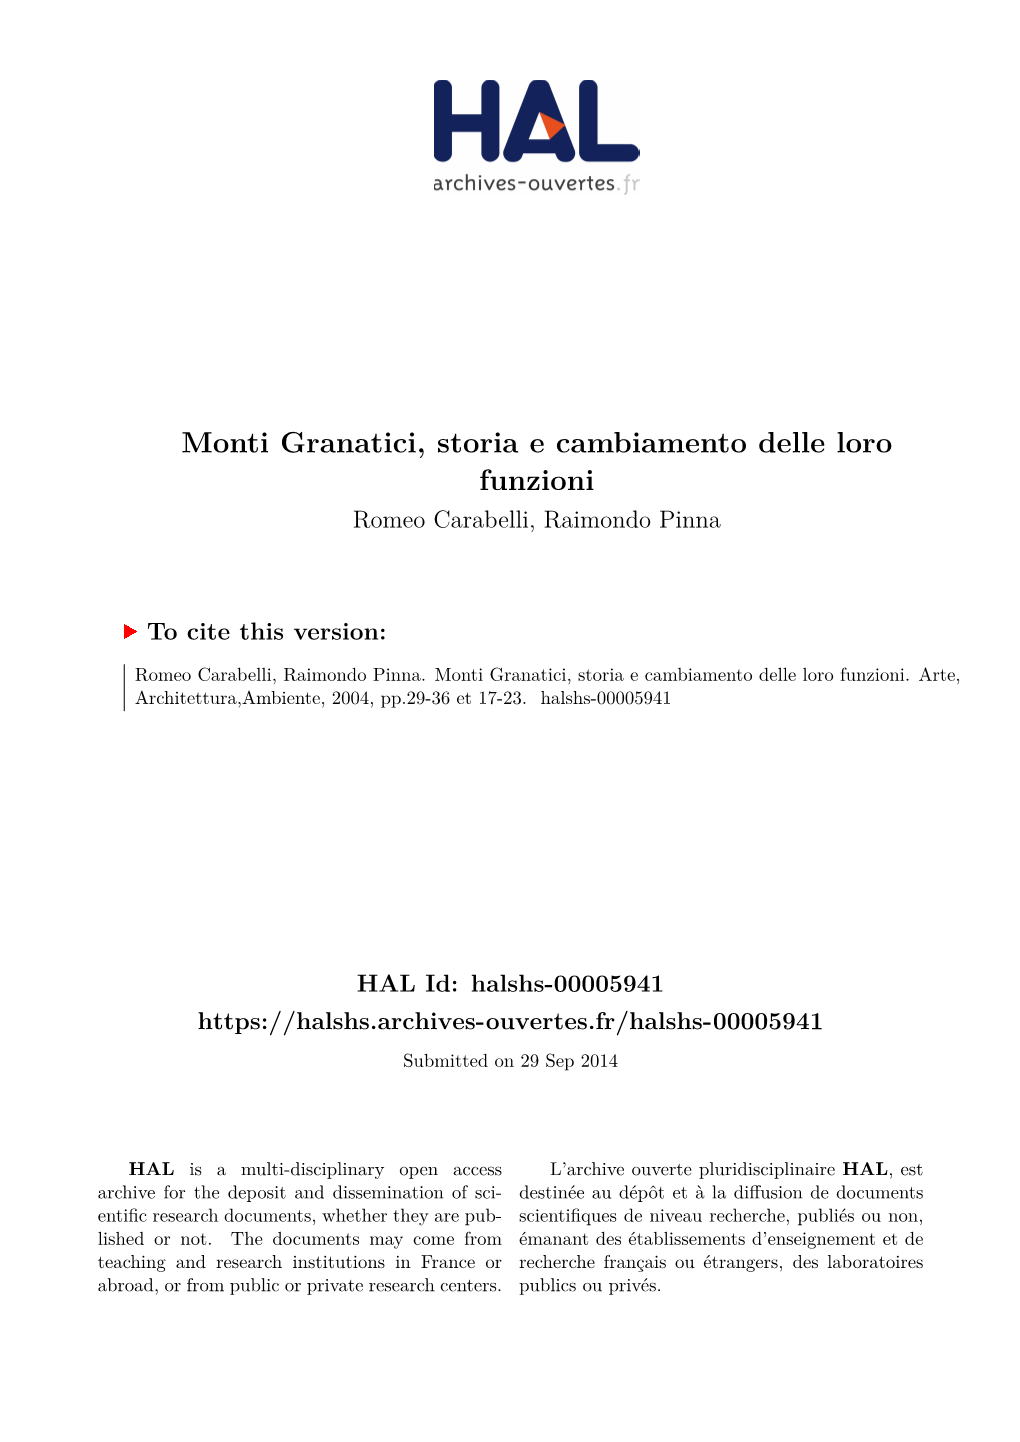 Monti Granatici, Storia E Cambiamento Delle Loro Funzioni Romeo Carabelli, Raimondo Pinna